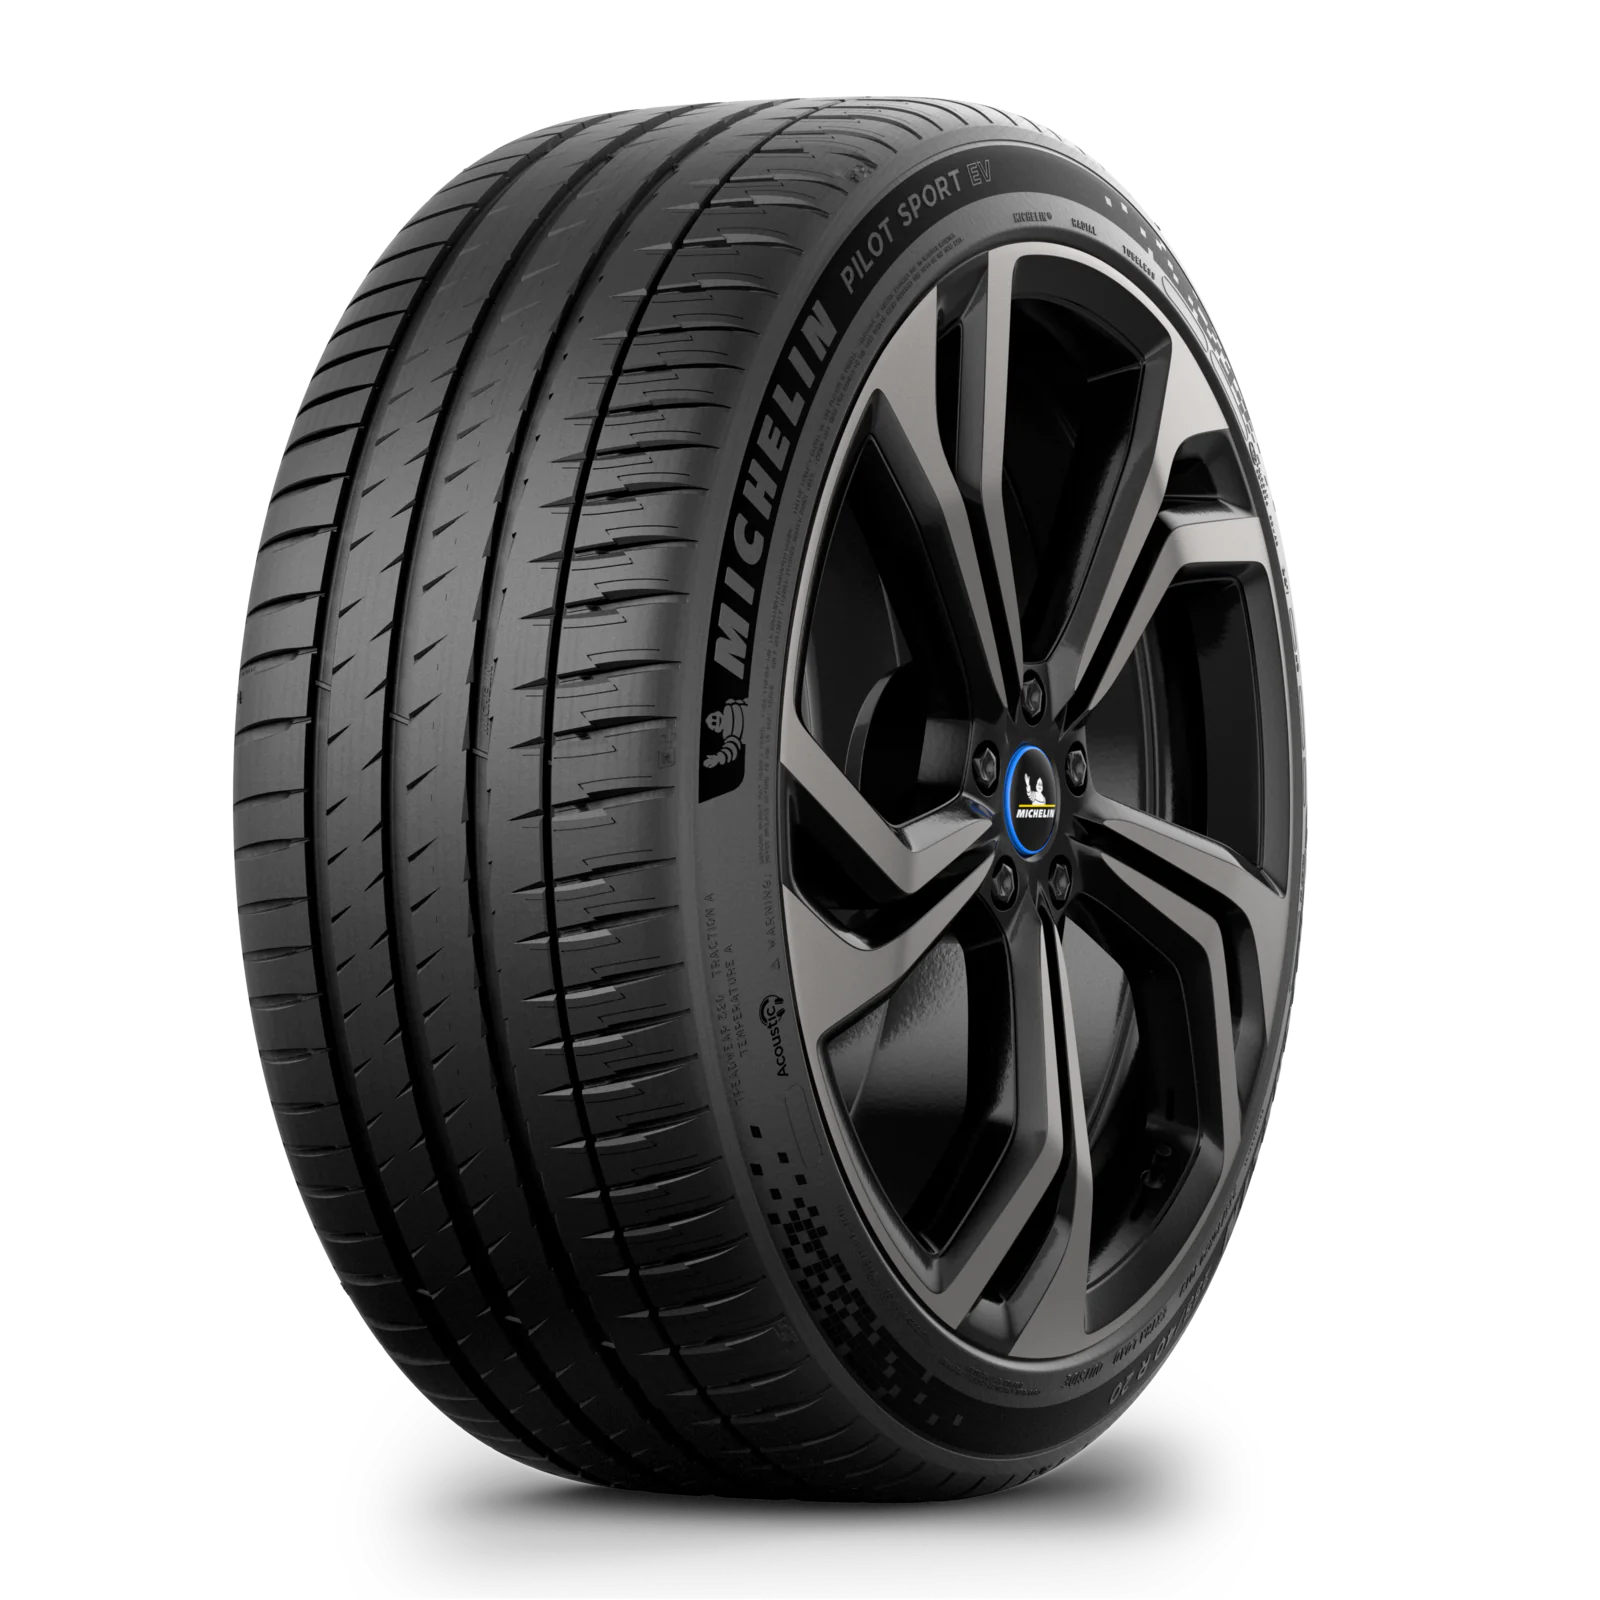 Michelin Michelin 235/50 R20 104Y PILOT SPORT EV XL pneumatici nuovi Estivo 